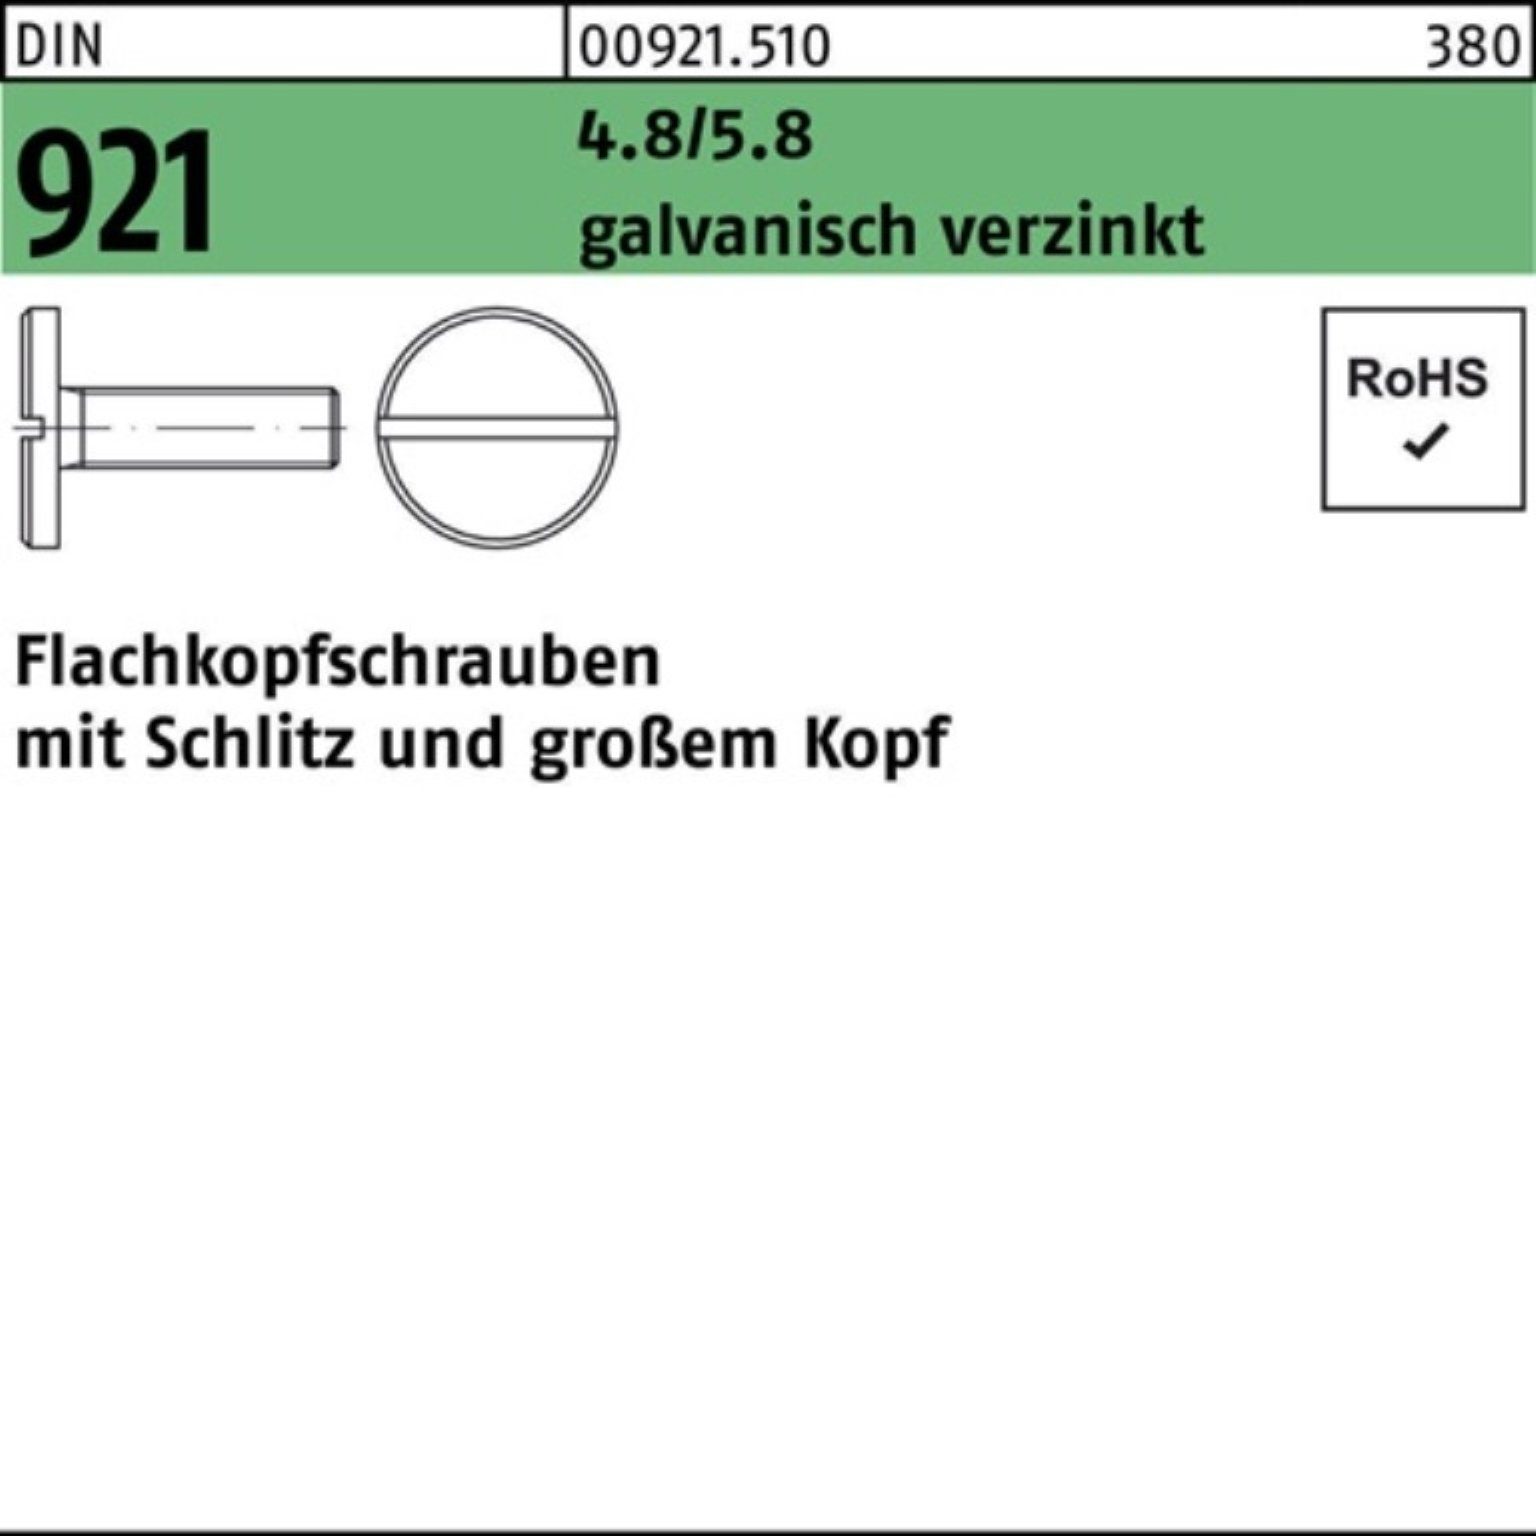 Reyher Schraube 4.8/5.8 Flachkopfschraube 921 100er galv.verz. M4x 10 DIN Schlitz Pack